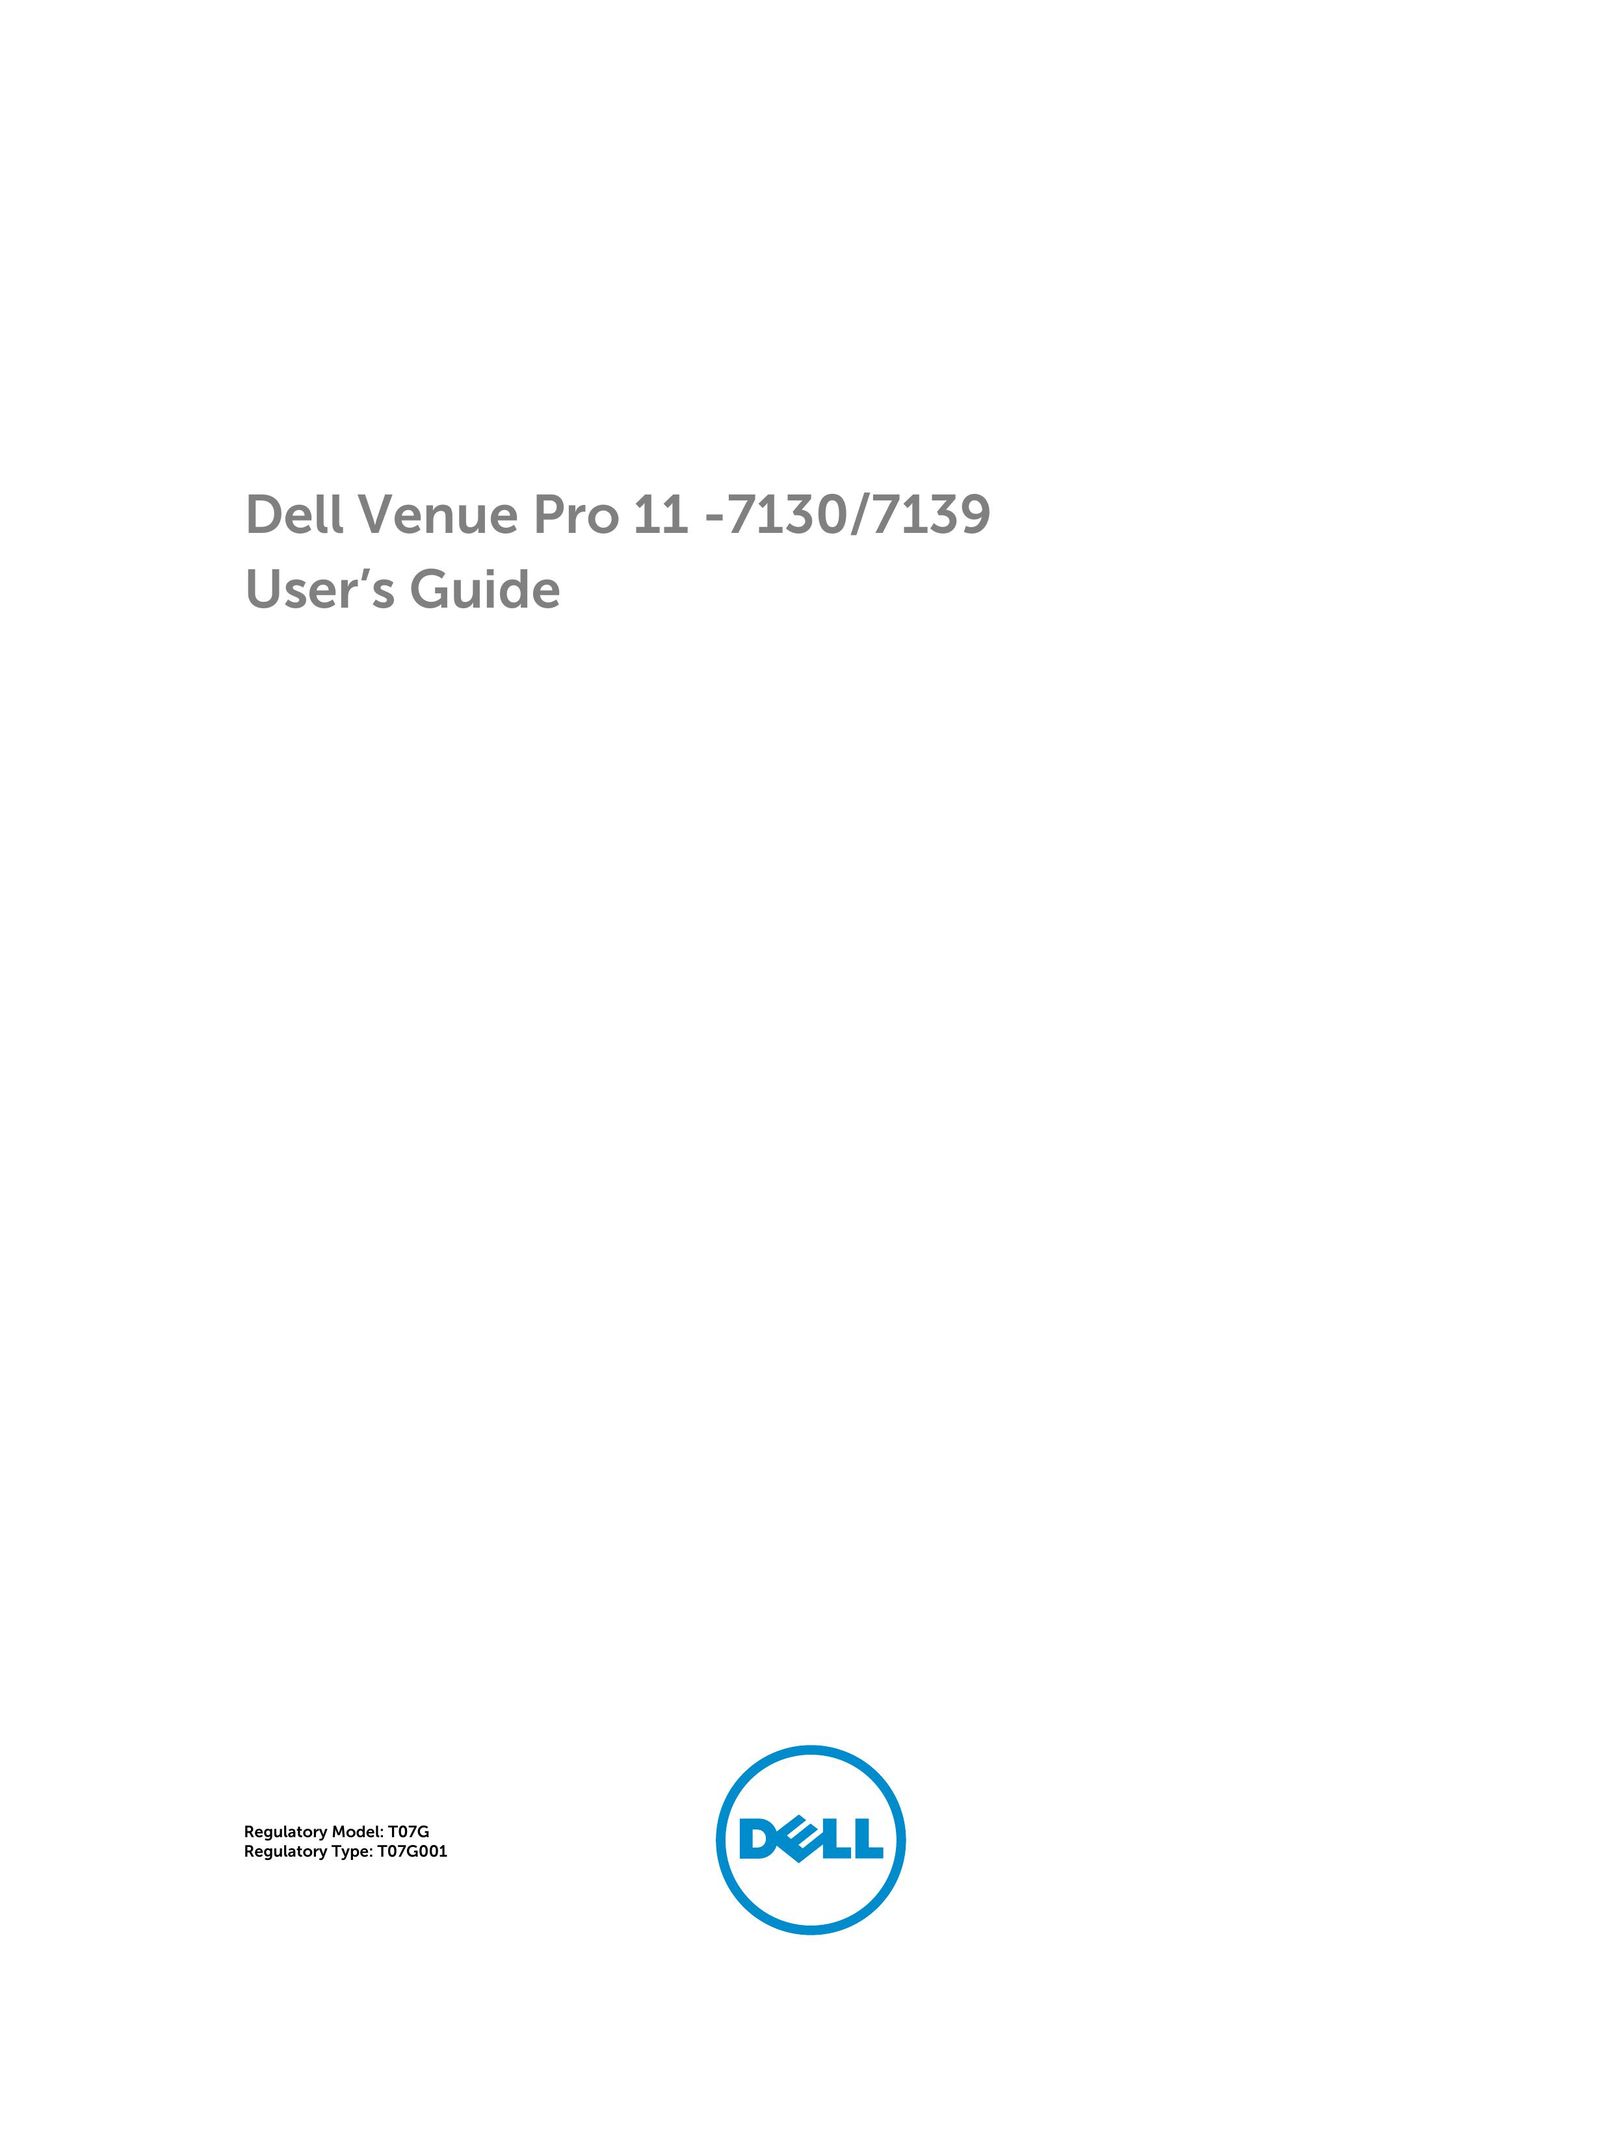 Dell Nov-39 Tablet User Manual